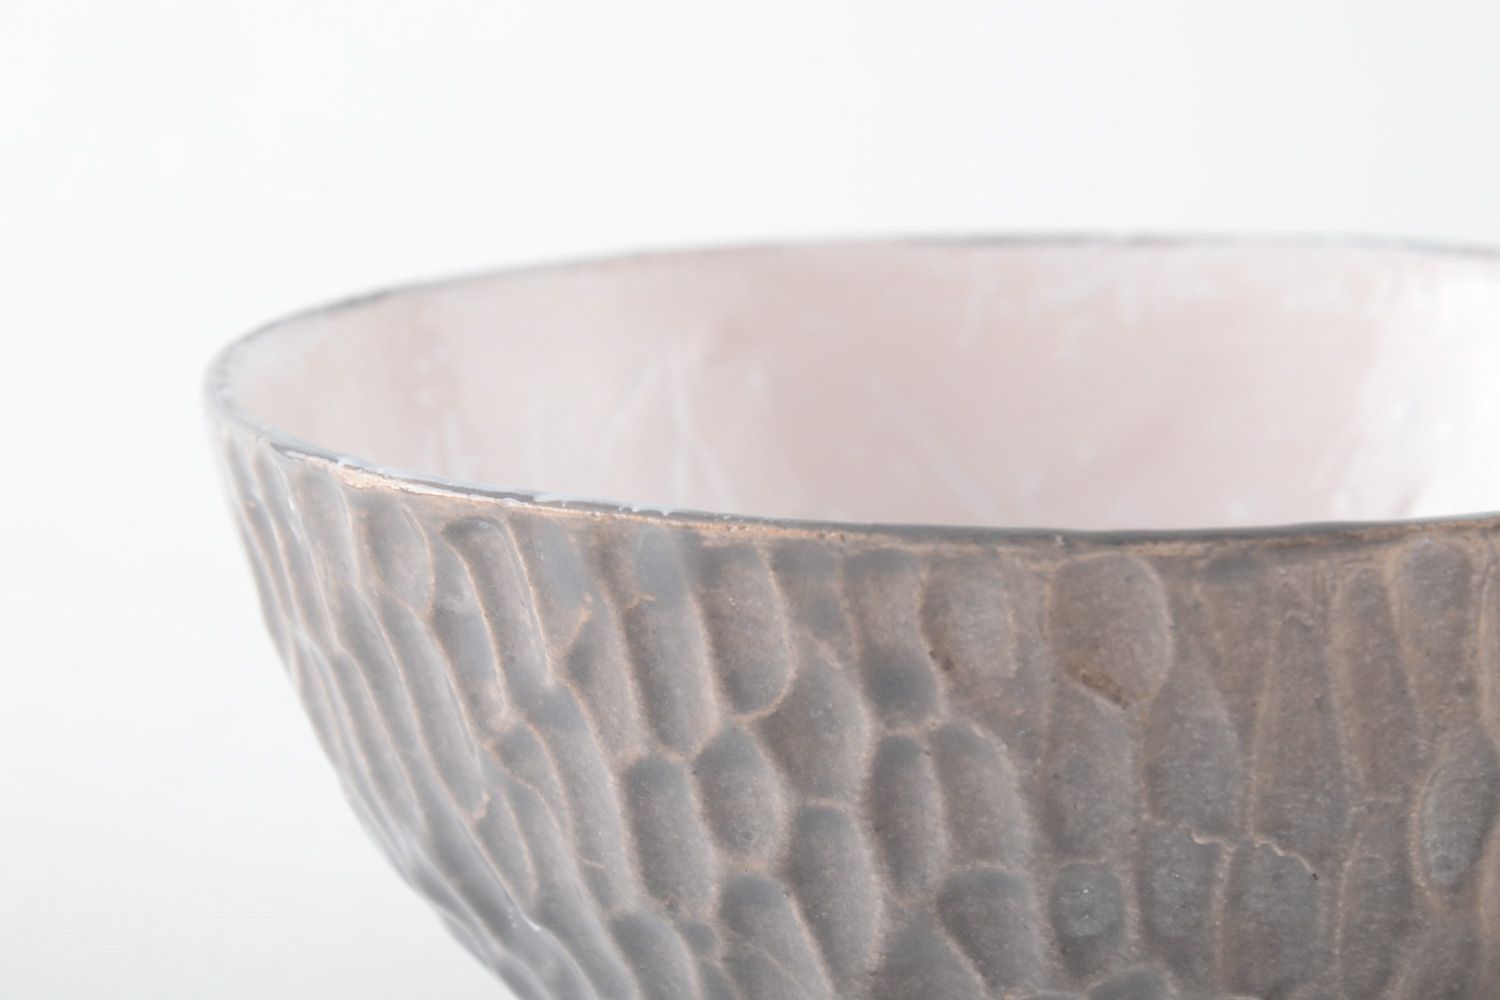 Homemade glazed clay bowl photo 3